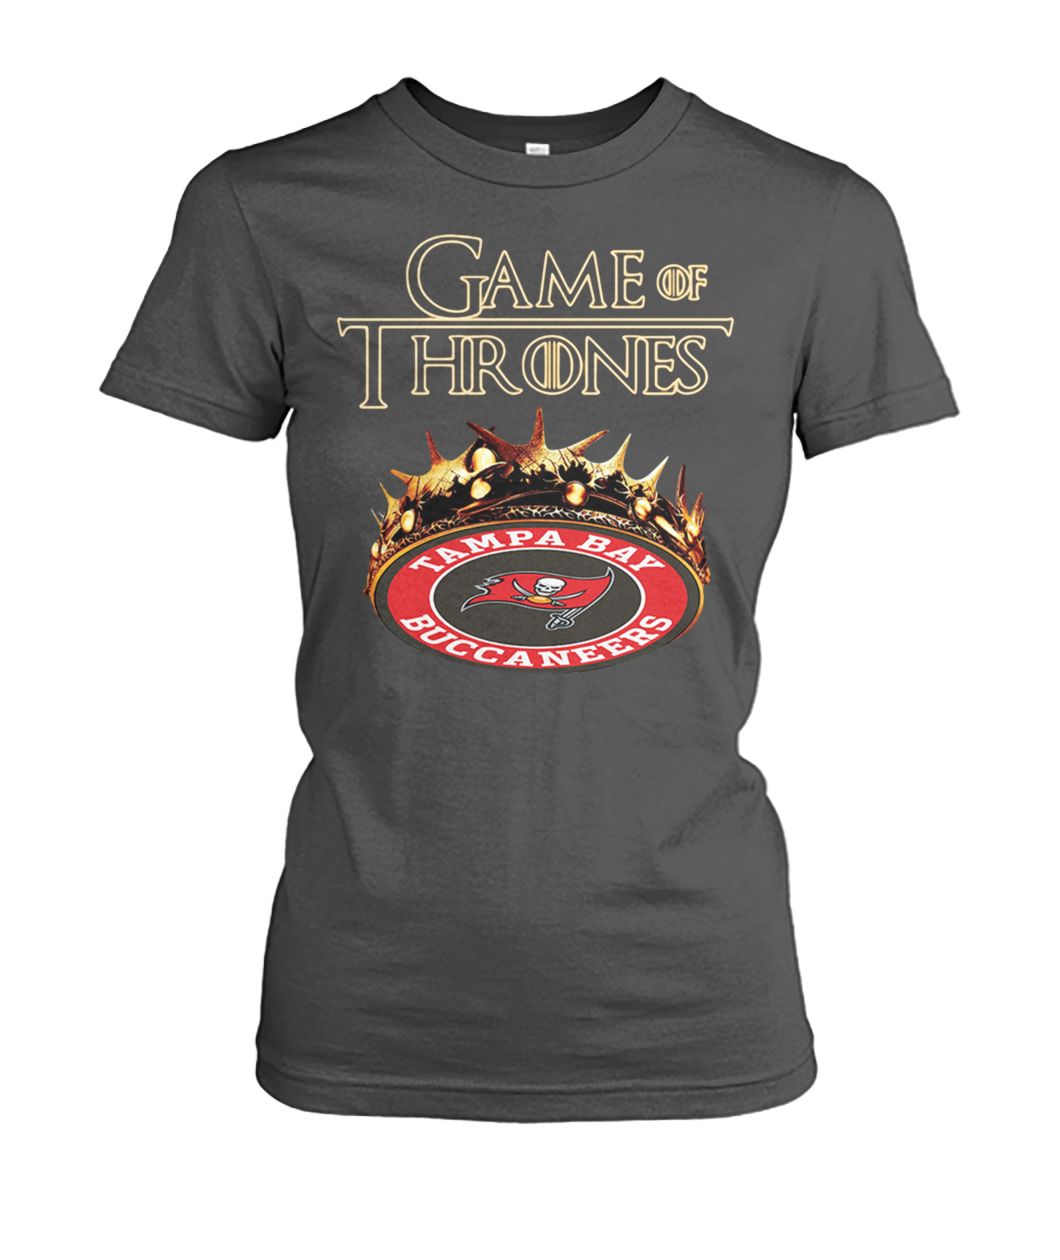 Game of thrones crown tampa bay buccaneers women's crew tee